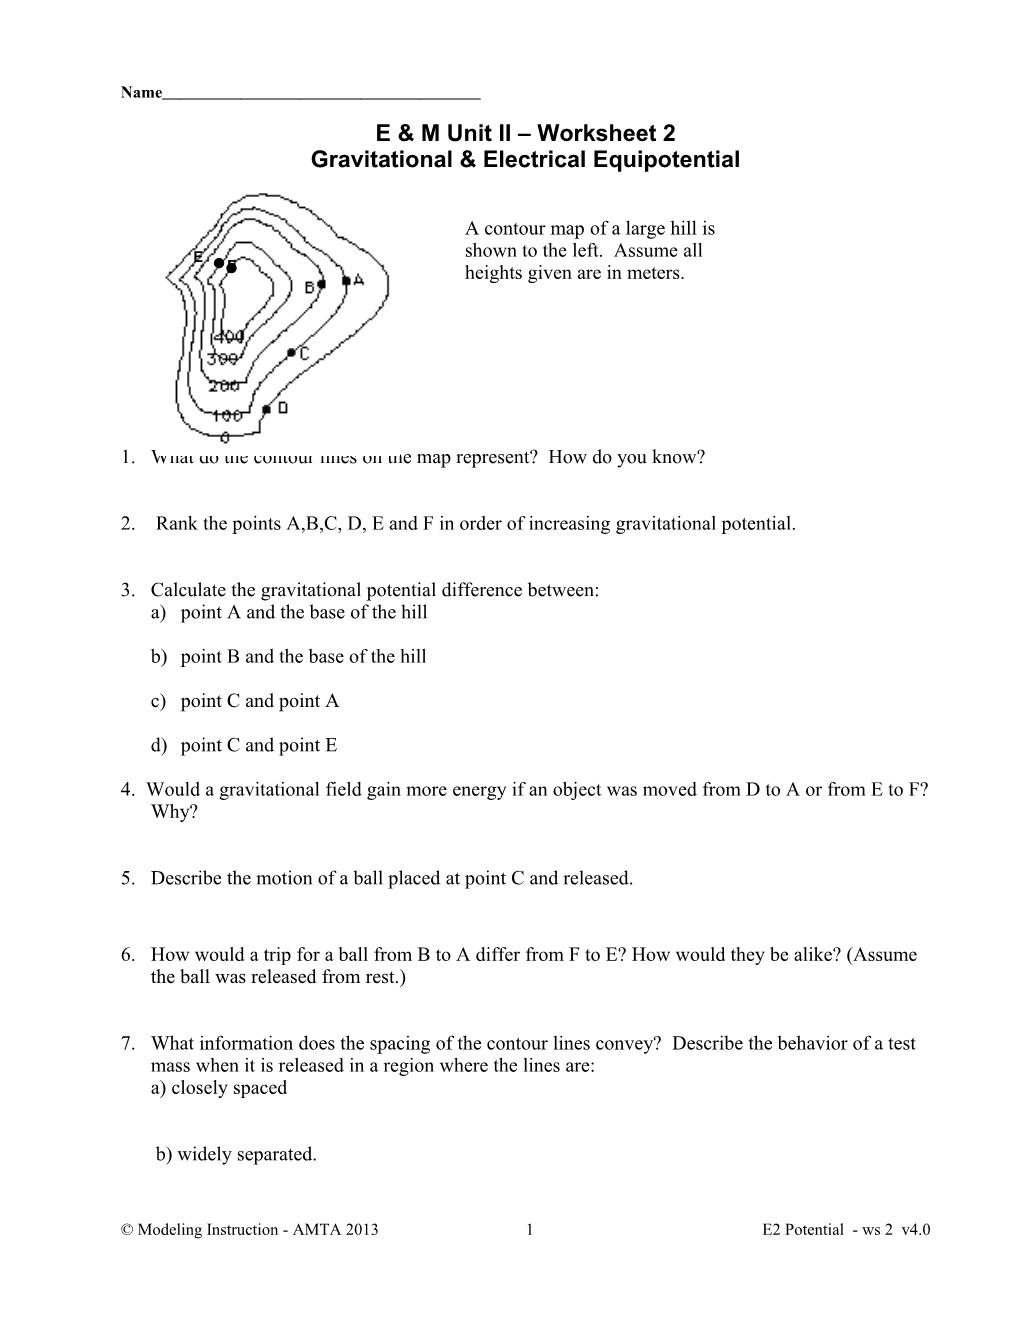 E & M Unit II Worksheet 2